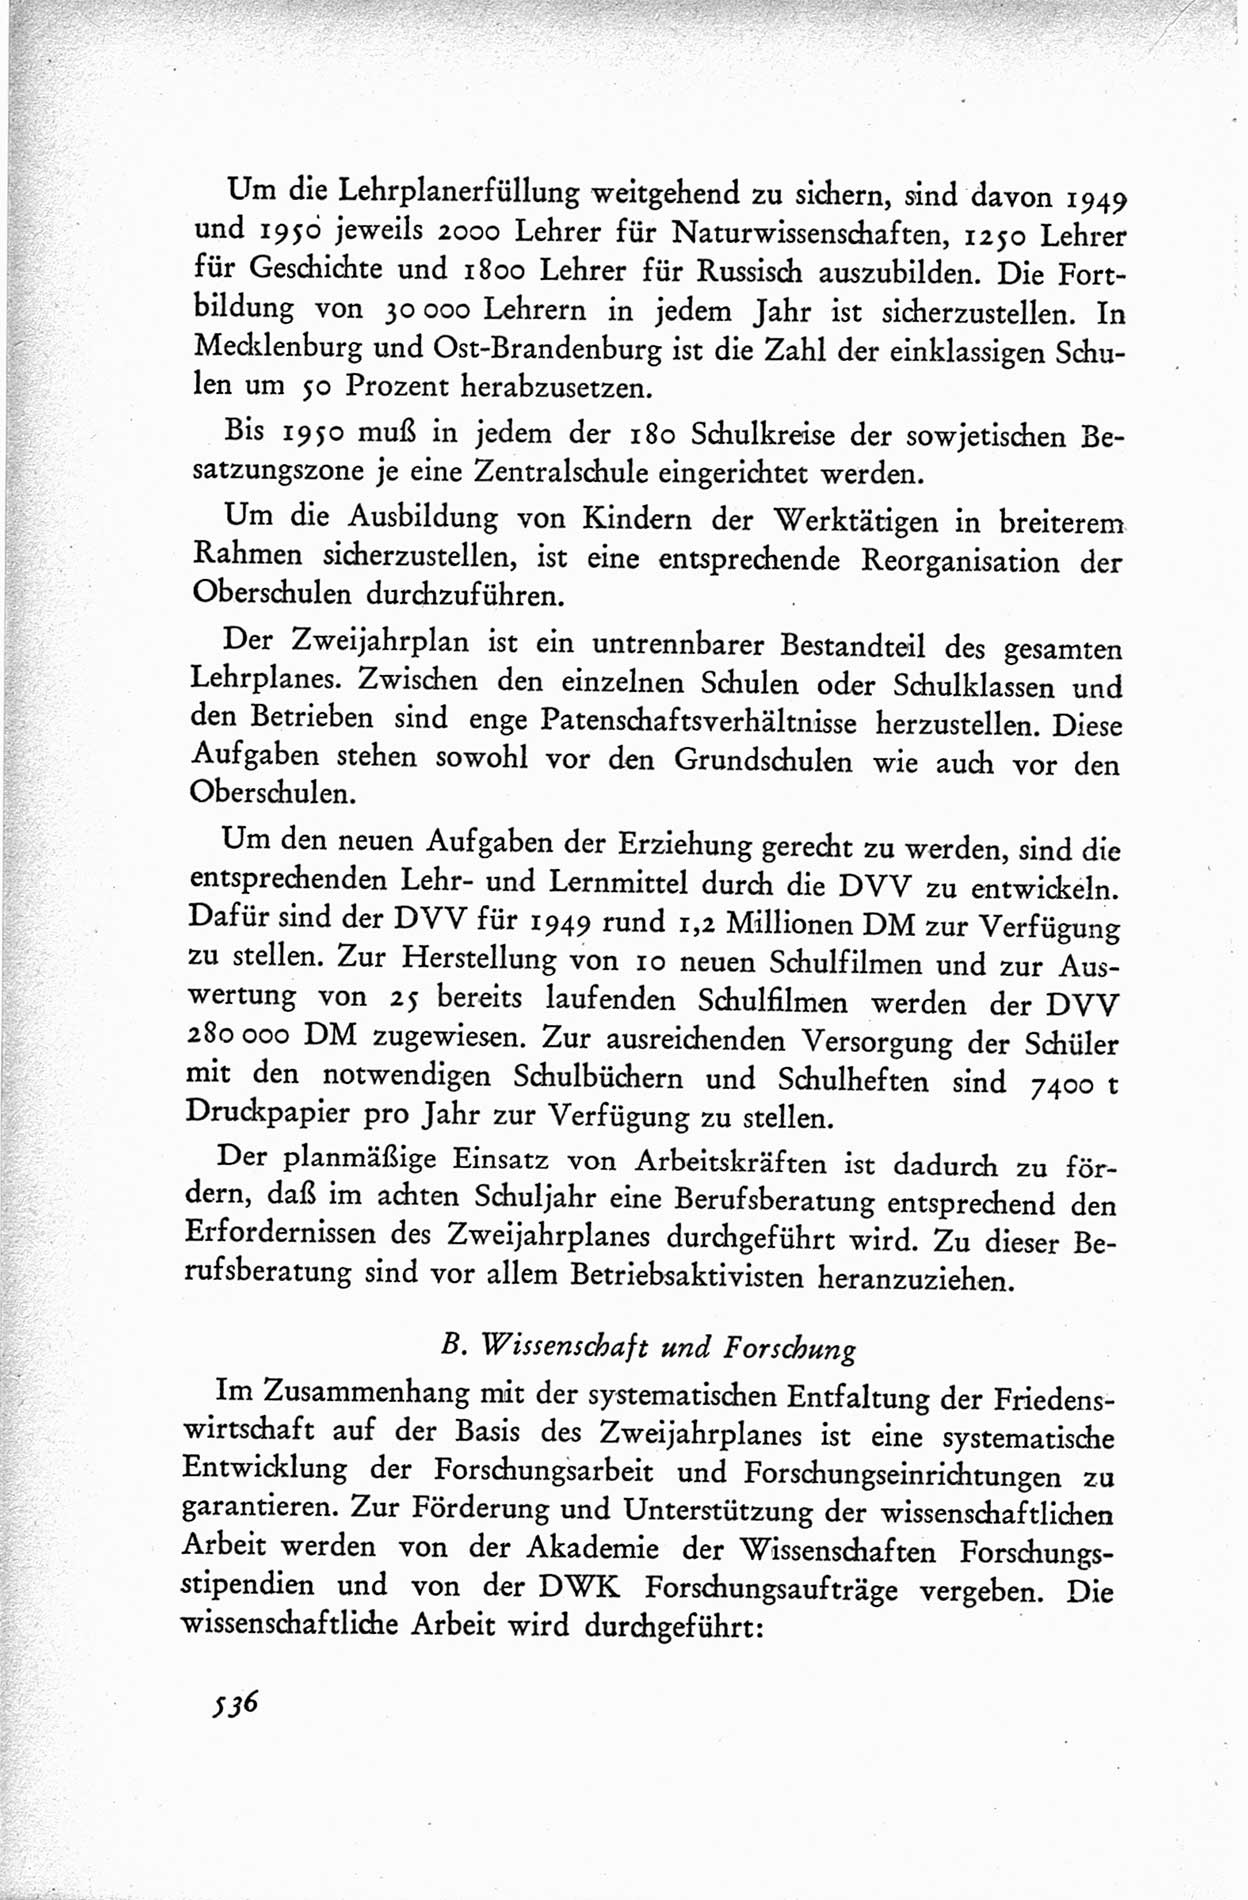 Protokoll der ersten Parteikonferenz der Sozialistischen Einheitspartei Deutschlands (SED) [Sowjetische Besatzungszone (SBZ) Deutschlands] vom 25. bis 28. Januar 1949 im Hause der Deutschen Wirtschaftskommission zu Berlin, Seite 536 (Prot. 1. PK SED SBZ Dtl. 1949, S. 536)